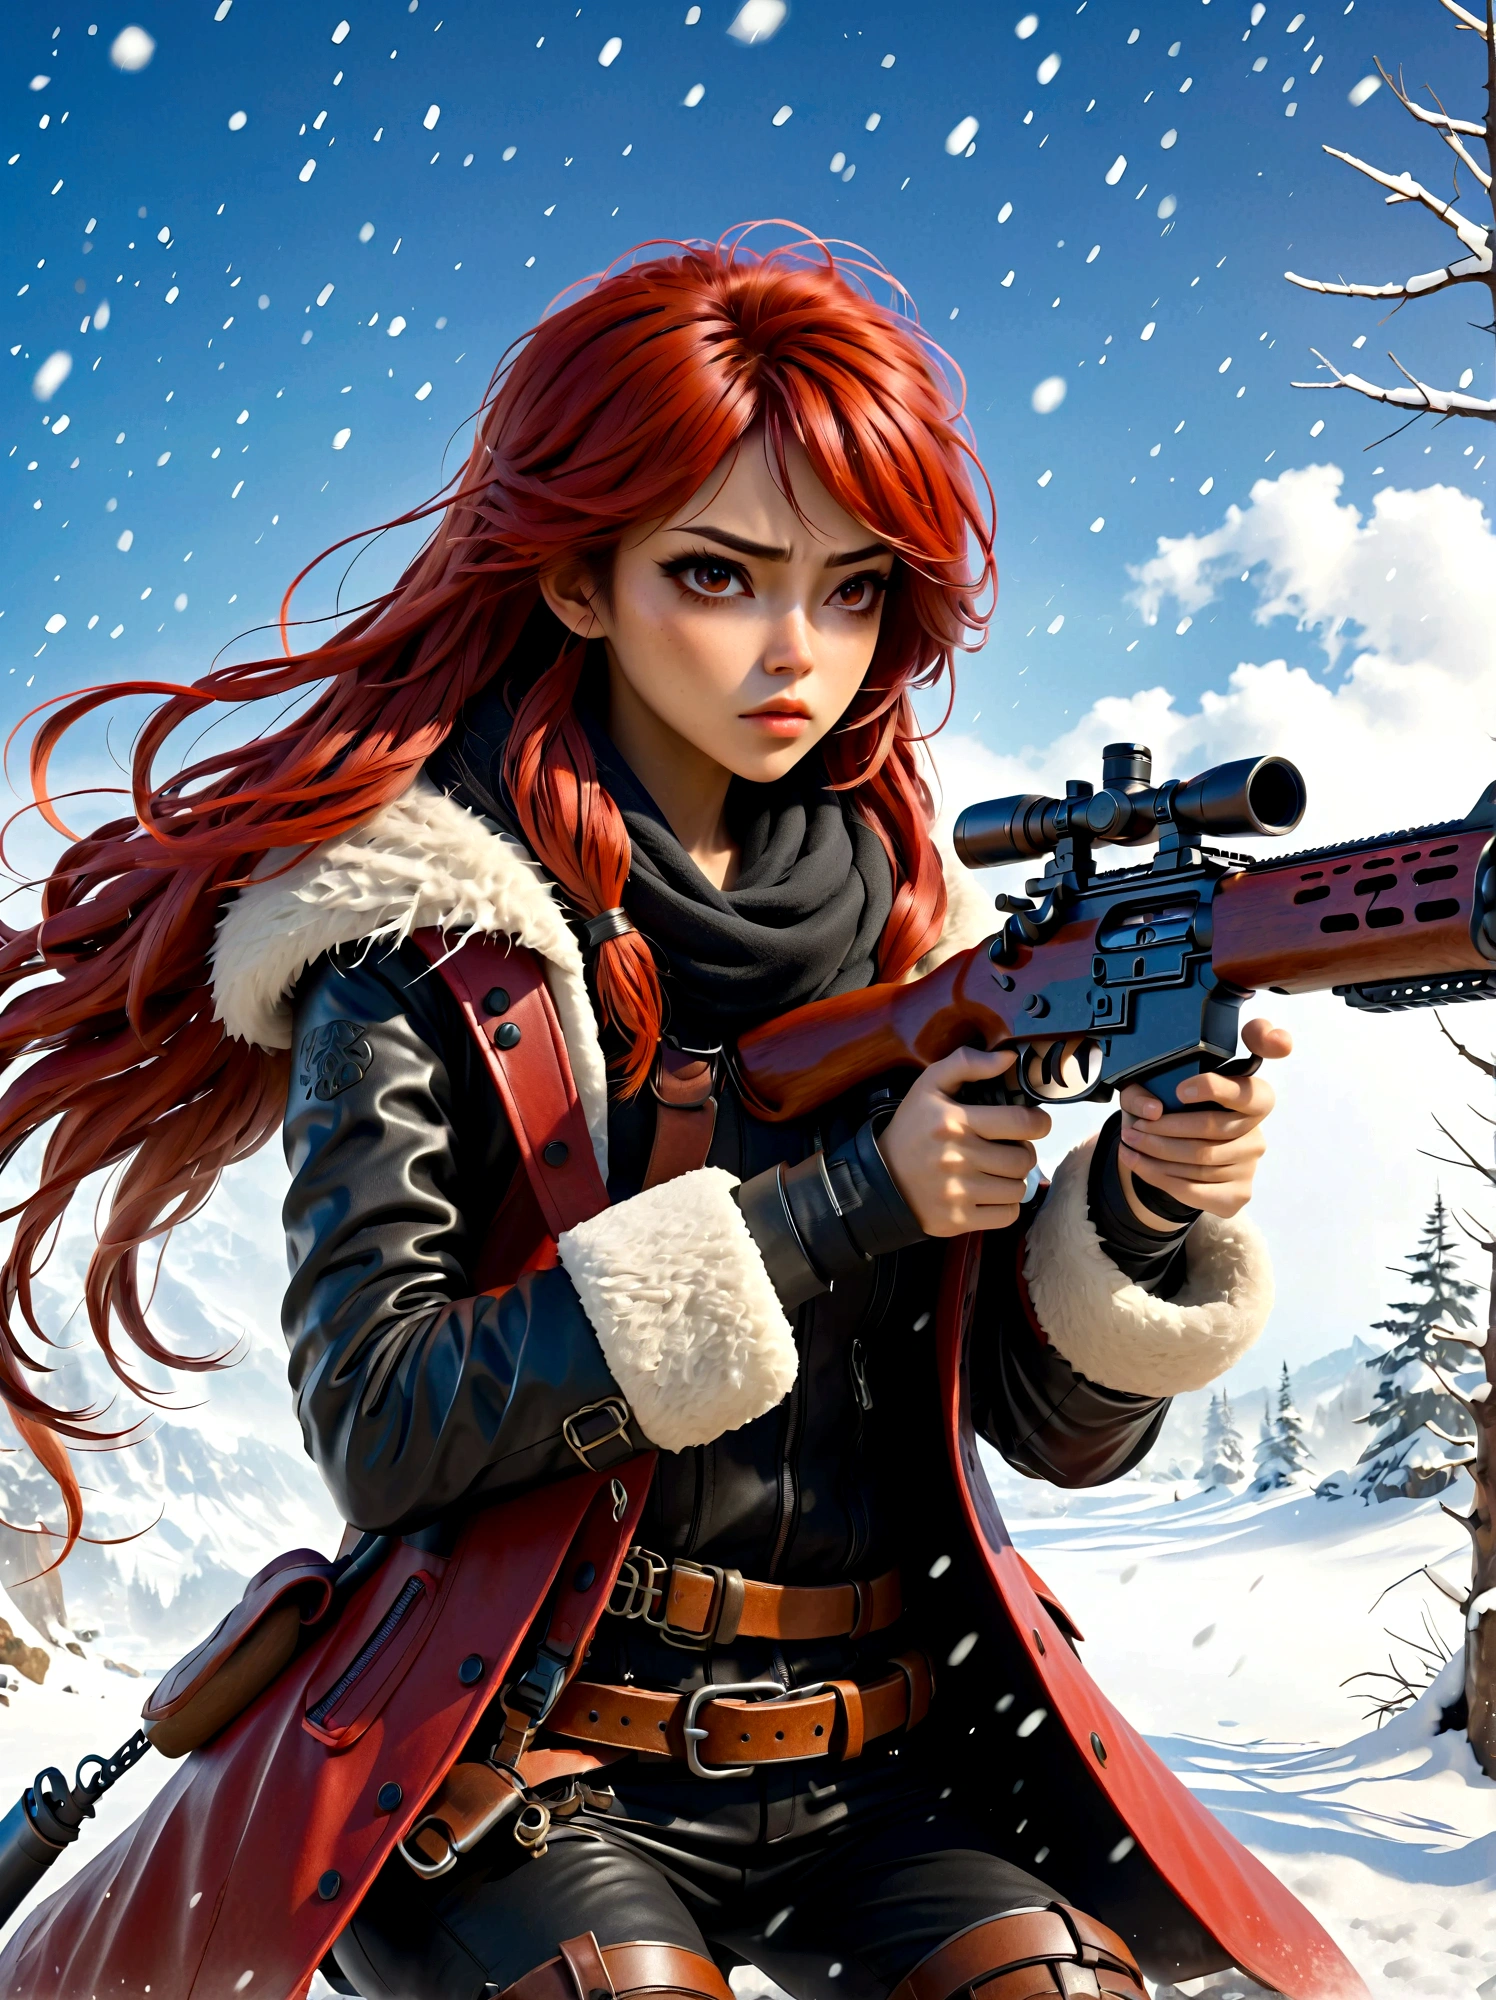 ライフルを持った少女, (嫌悪感の表情:1.5), 雪合戦のポーズ, 東, ブレイドアンドソウル, インクスタイル, 長い赤い髪, 革と毛皮のコート, 寒い, アートワーク, 3D, 4K, 詳細, 実用的